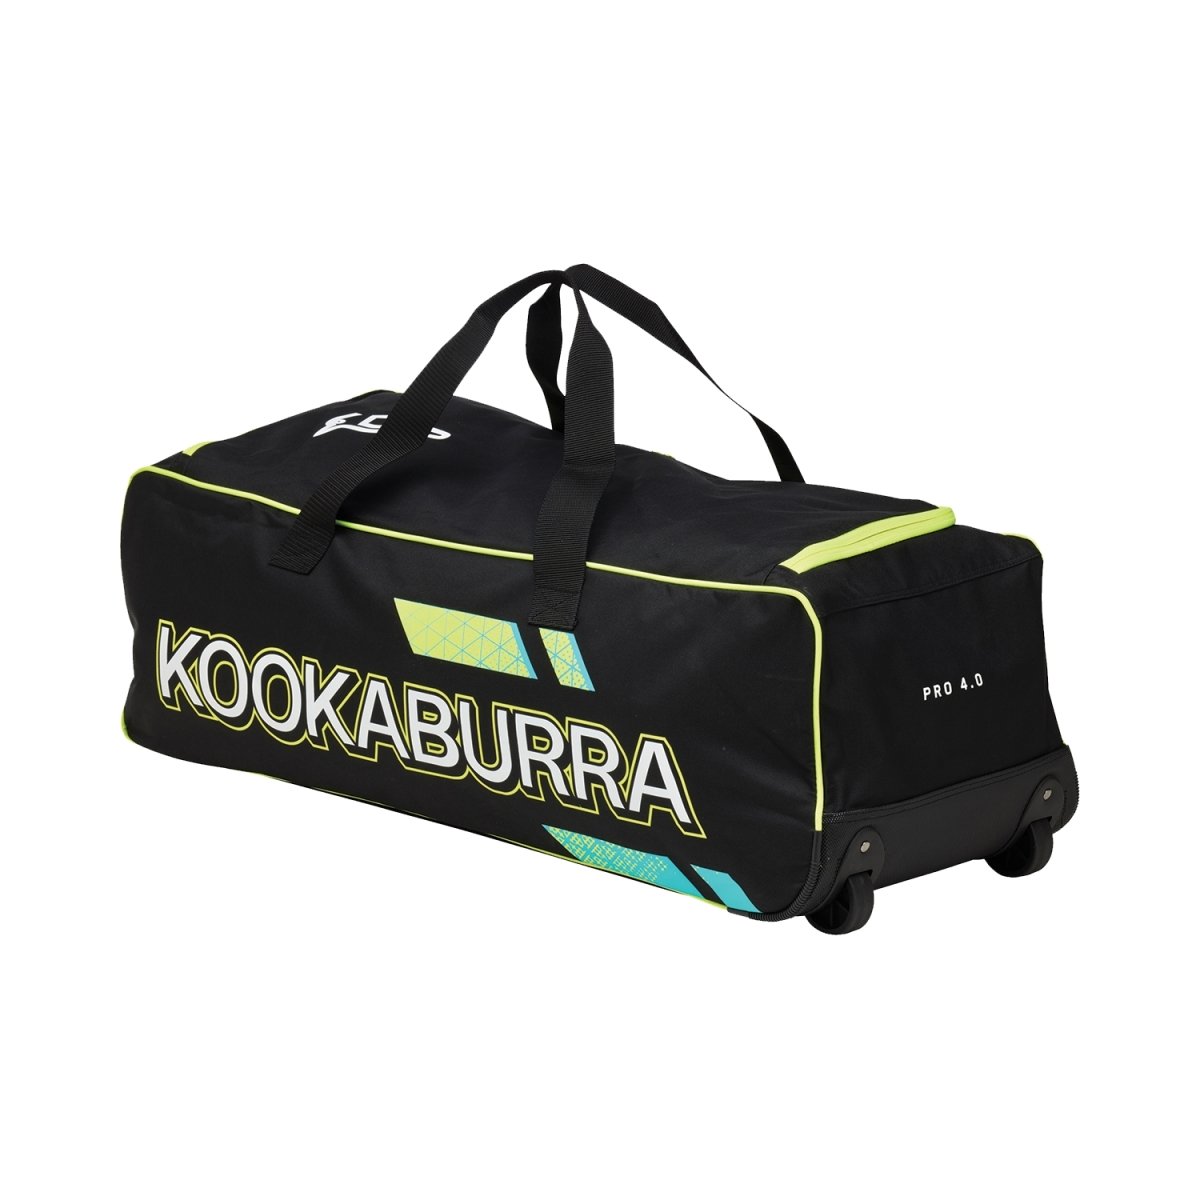 Kookaburra Pro 4.0 Cricket Wheelie Kitbag.